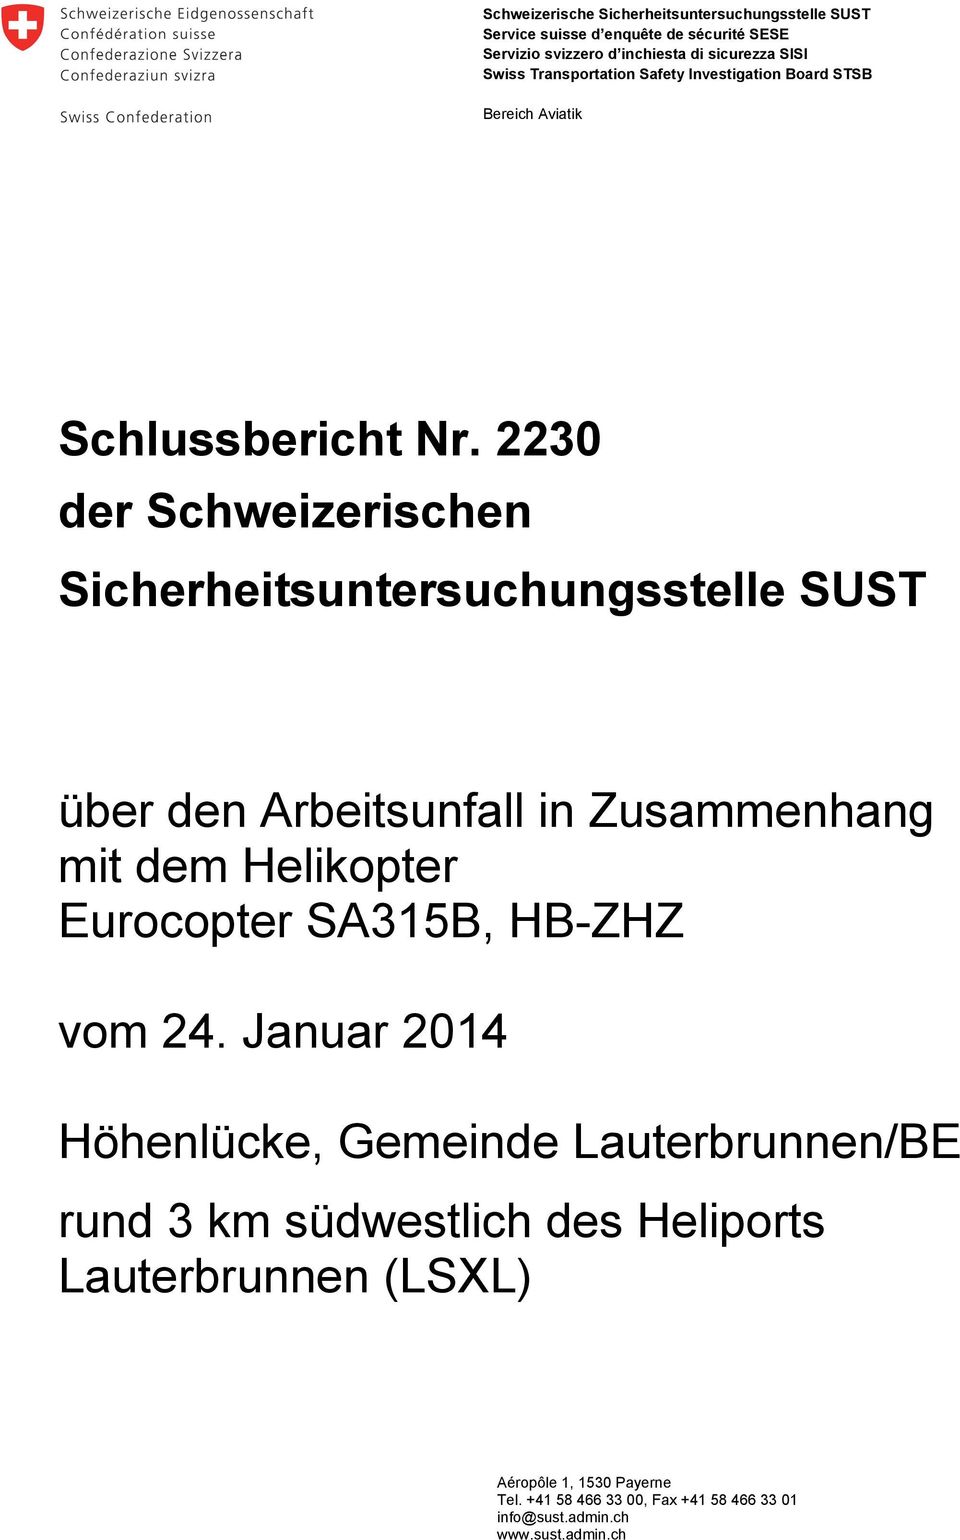 2230 der Schweizerischen Sicherheitsuntersuchungsstelle SUST über den Arbeitsunfall in Zusammenhang mit dem Helikopter Eurocopter SA315B, vom 24.